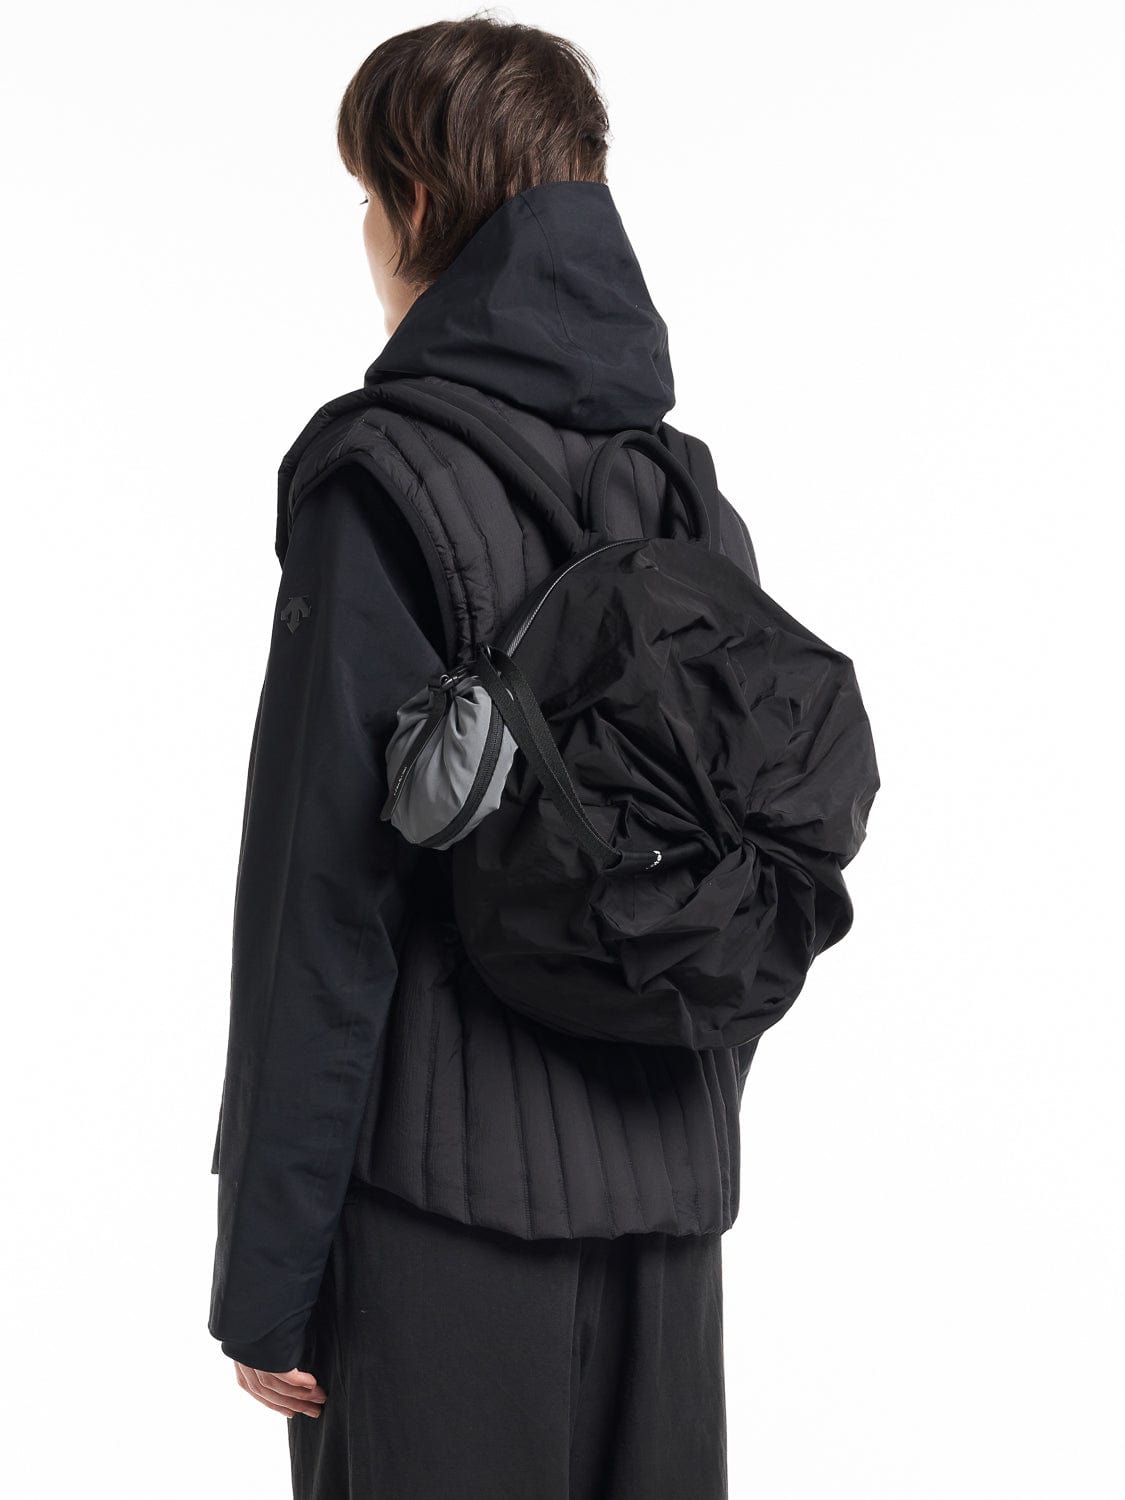 coteetciel Backpack Adria Infinity Black côte&ciel EU 28980